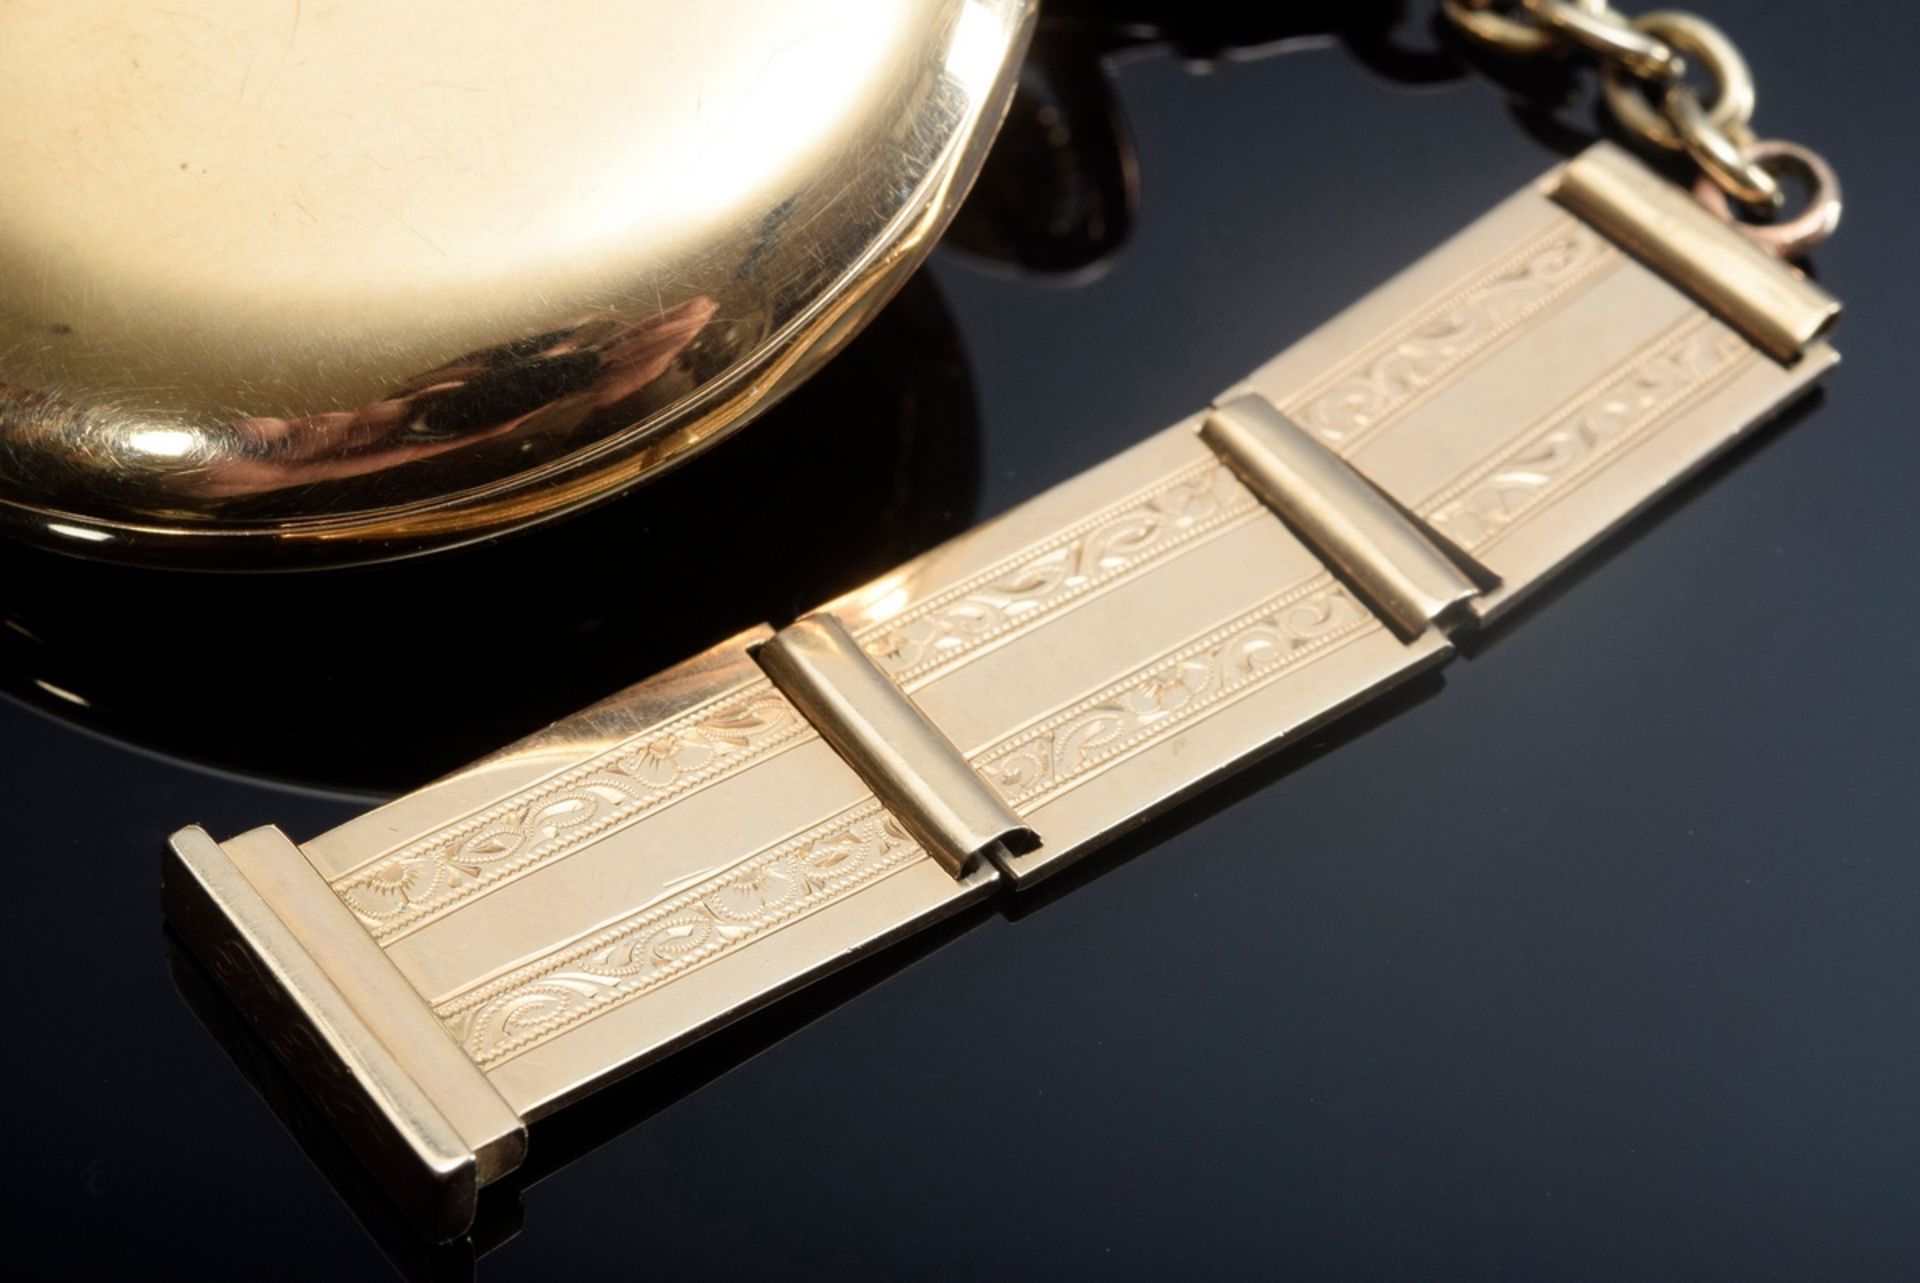 RG 585 Alpina 3-Deckel Taschenuhr mit Ankerwerk | RG 585 Alpina 3-lidded pocket watch with lever m - Bild 4 aus 10